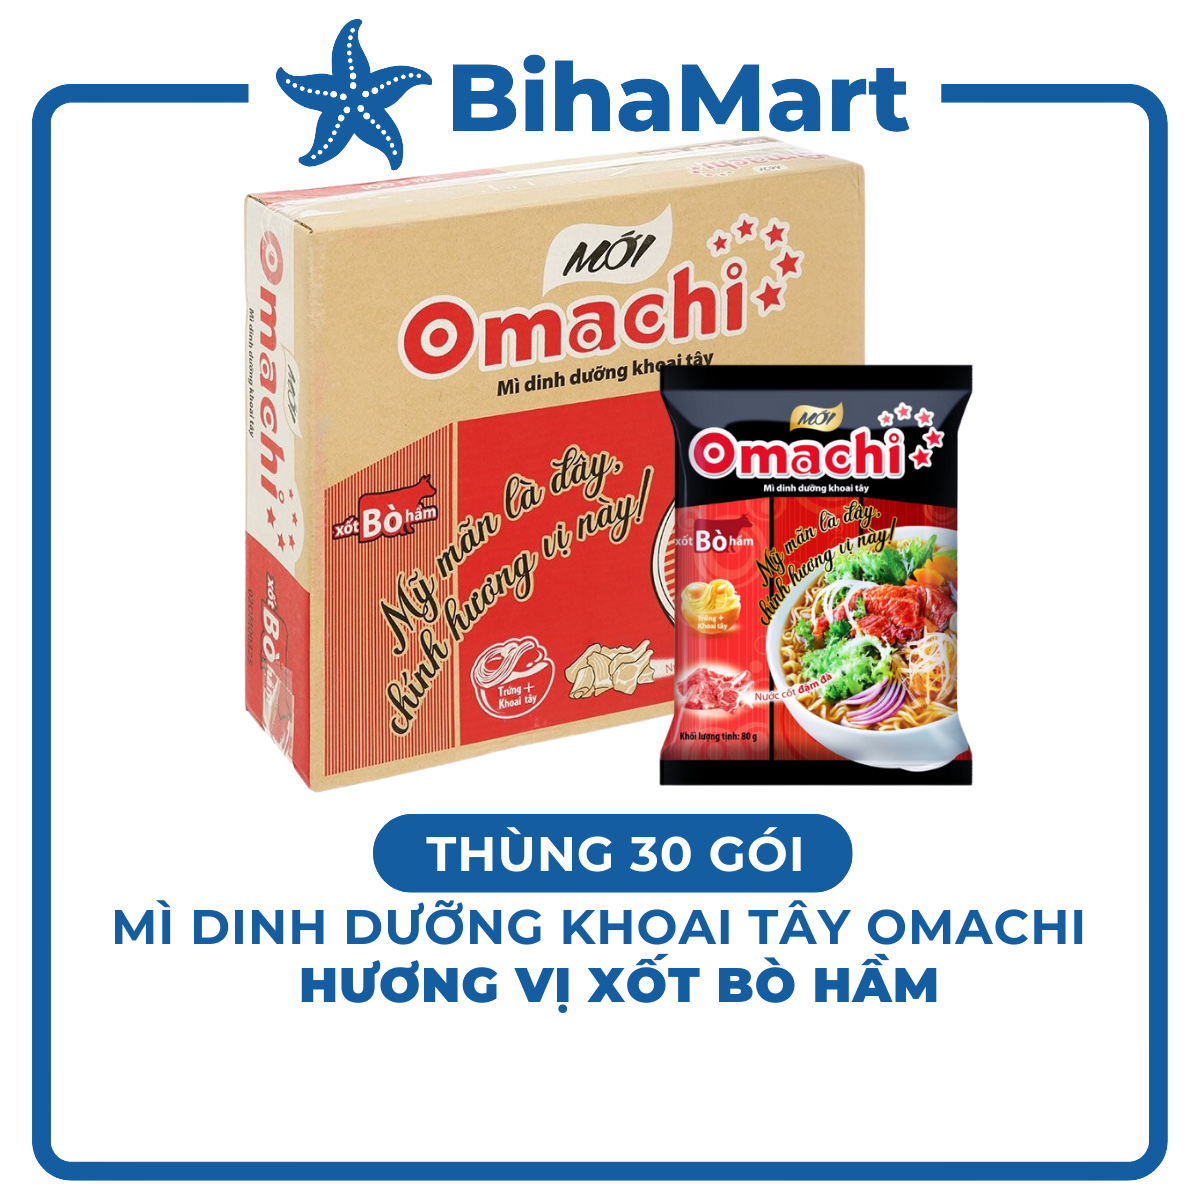 [THÙNG 30 GÓI] - MASAN - Mì Omachi GÓI hương vị Xốt Bò Hầm - Mì ăn liền khoai tây Omachi Sốt Bò Hầm (80g/gói)